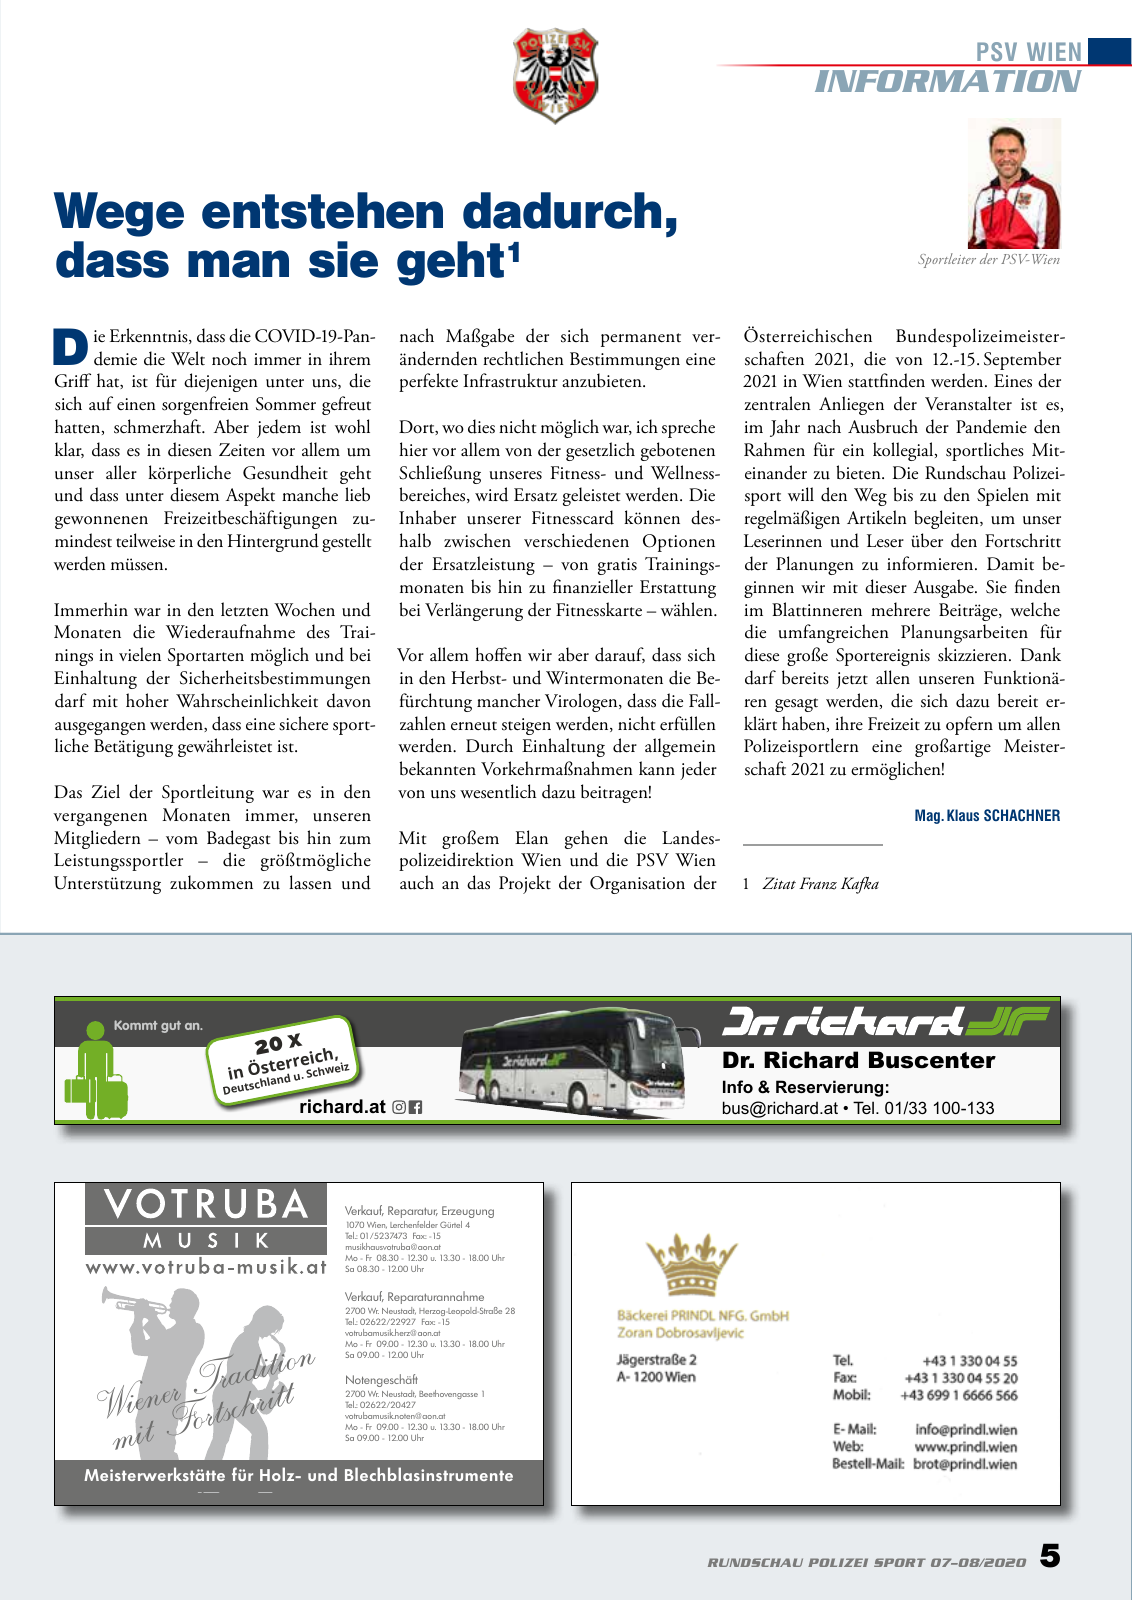 Vorschau Rundschau Polizei Sport 07-08/2020 Seite 5